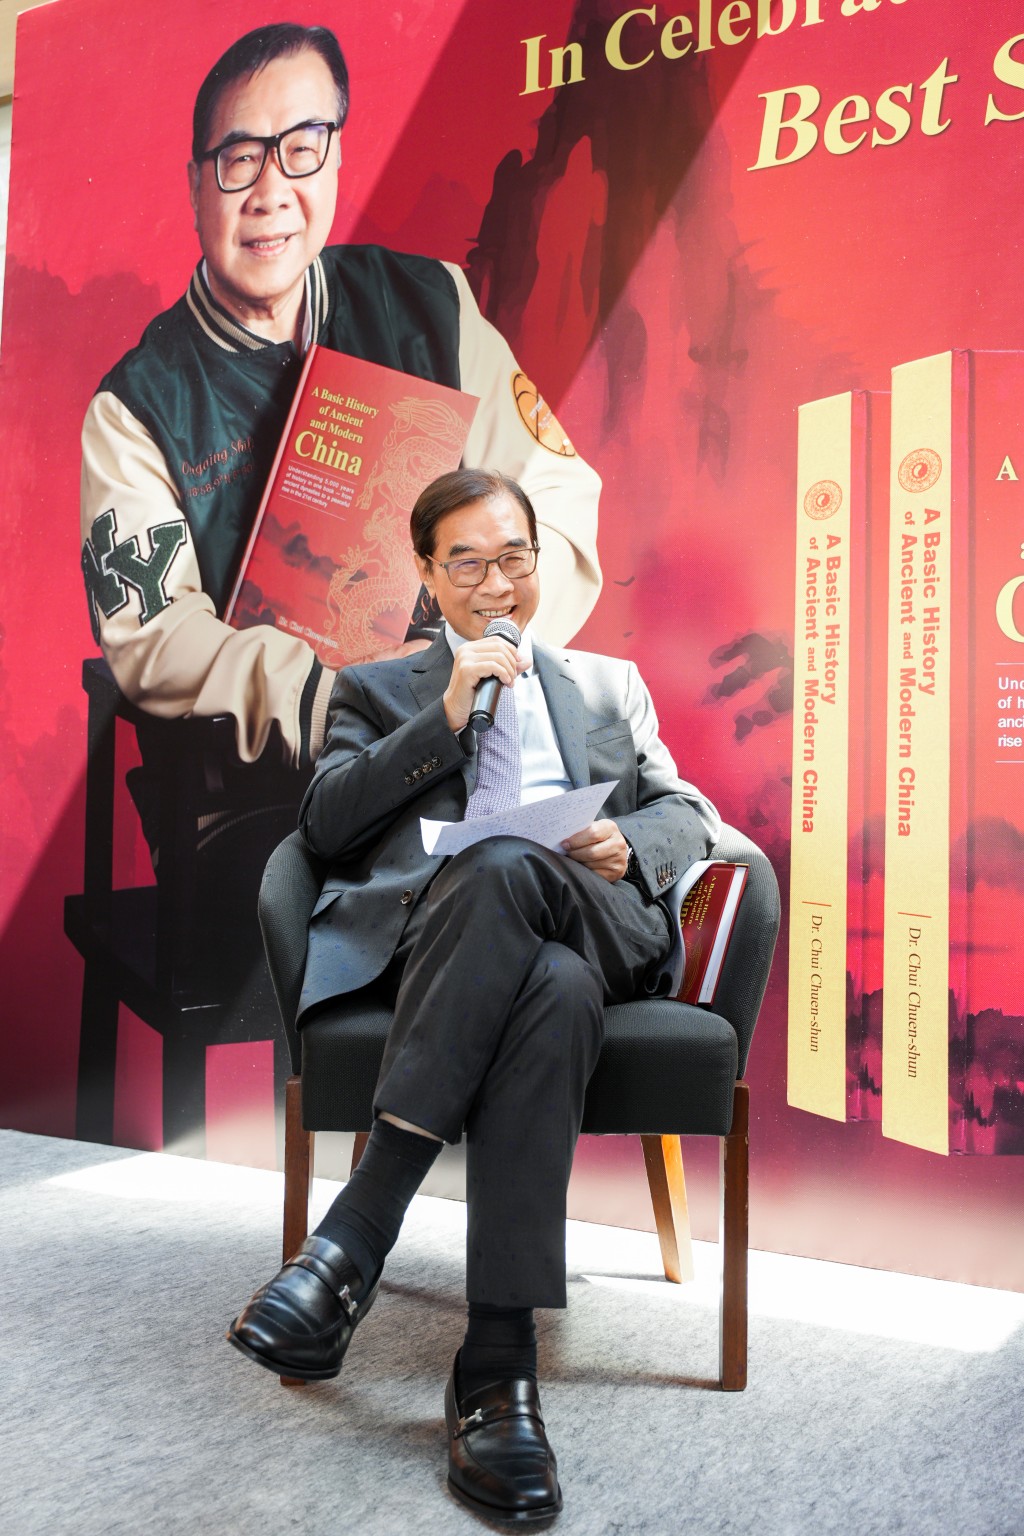 徐传顺于发布会上分享他创作有关古今中国新书的经历和感受。